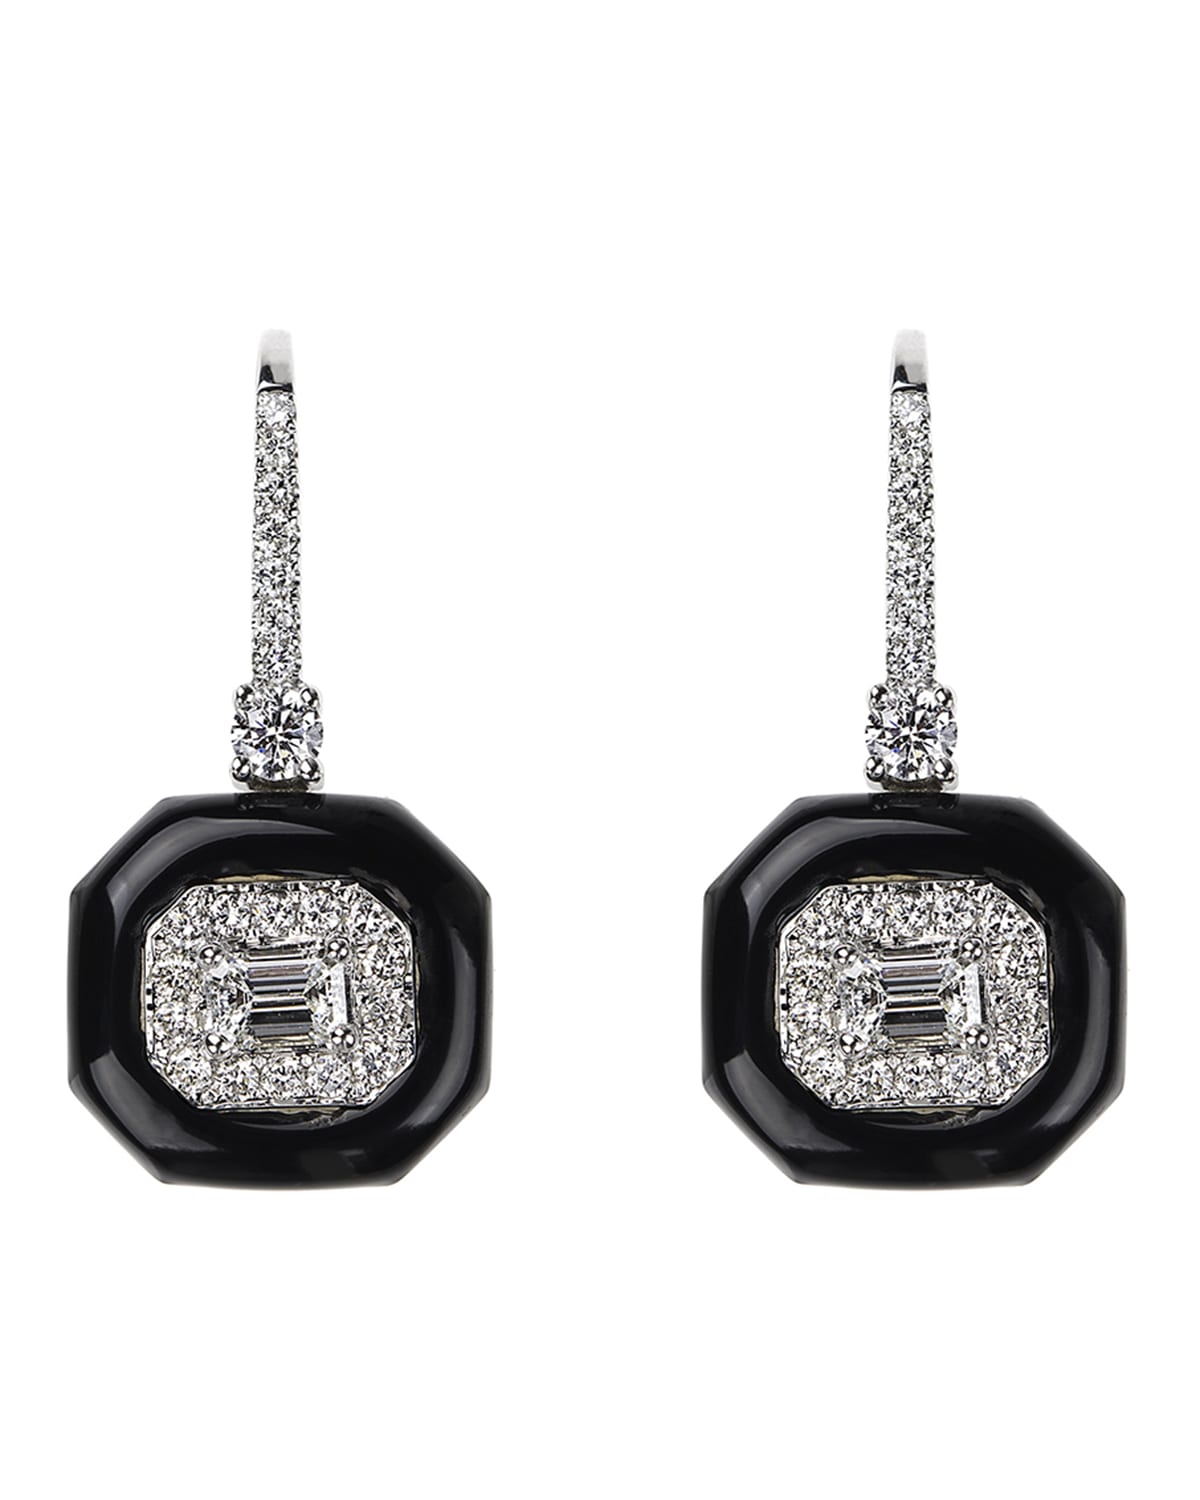 Oui 18k White Gold Diamond & Black Enamel Drop Earrings